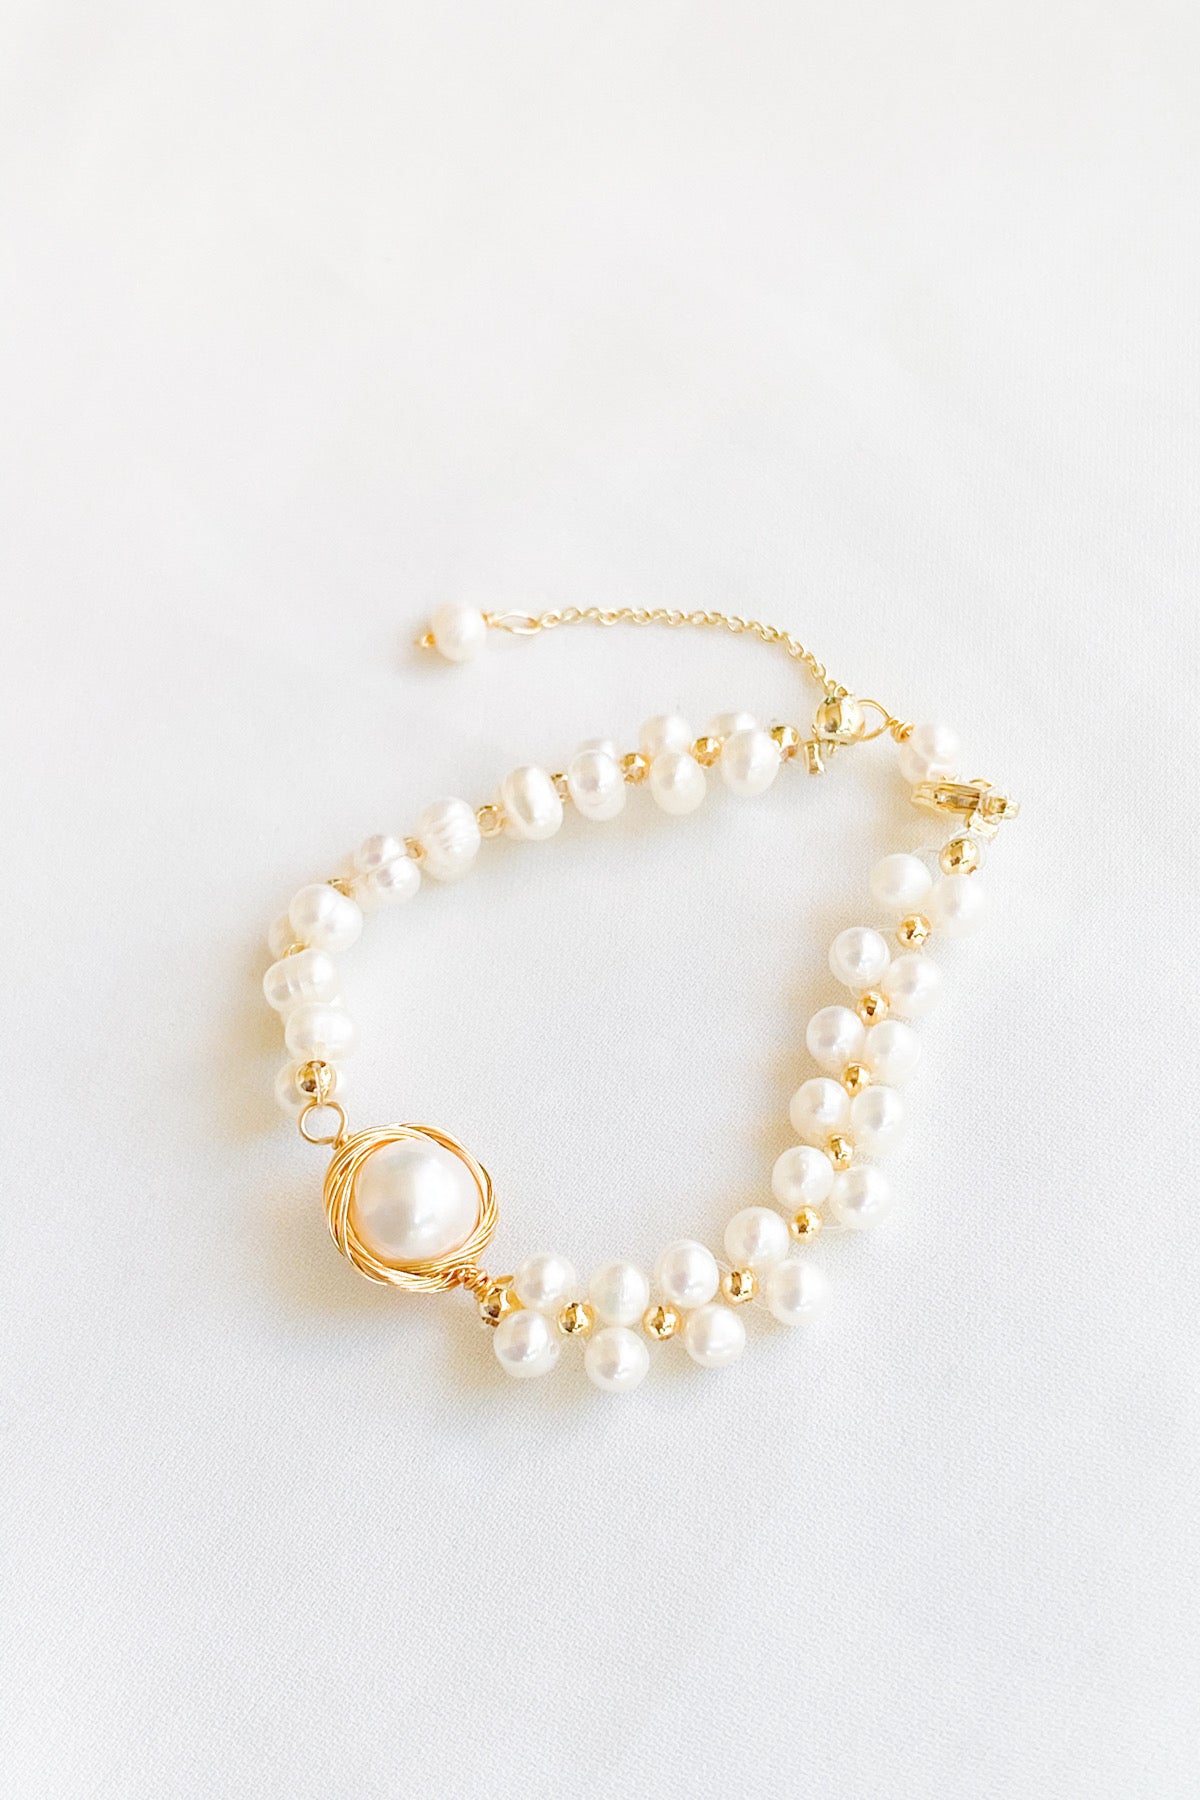 Tiffany HardWear freshwater pearl bracelet in sterling silver, small. |  Tiffany & Co.